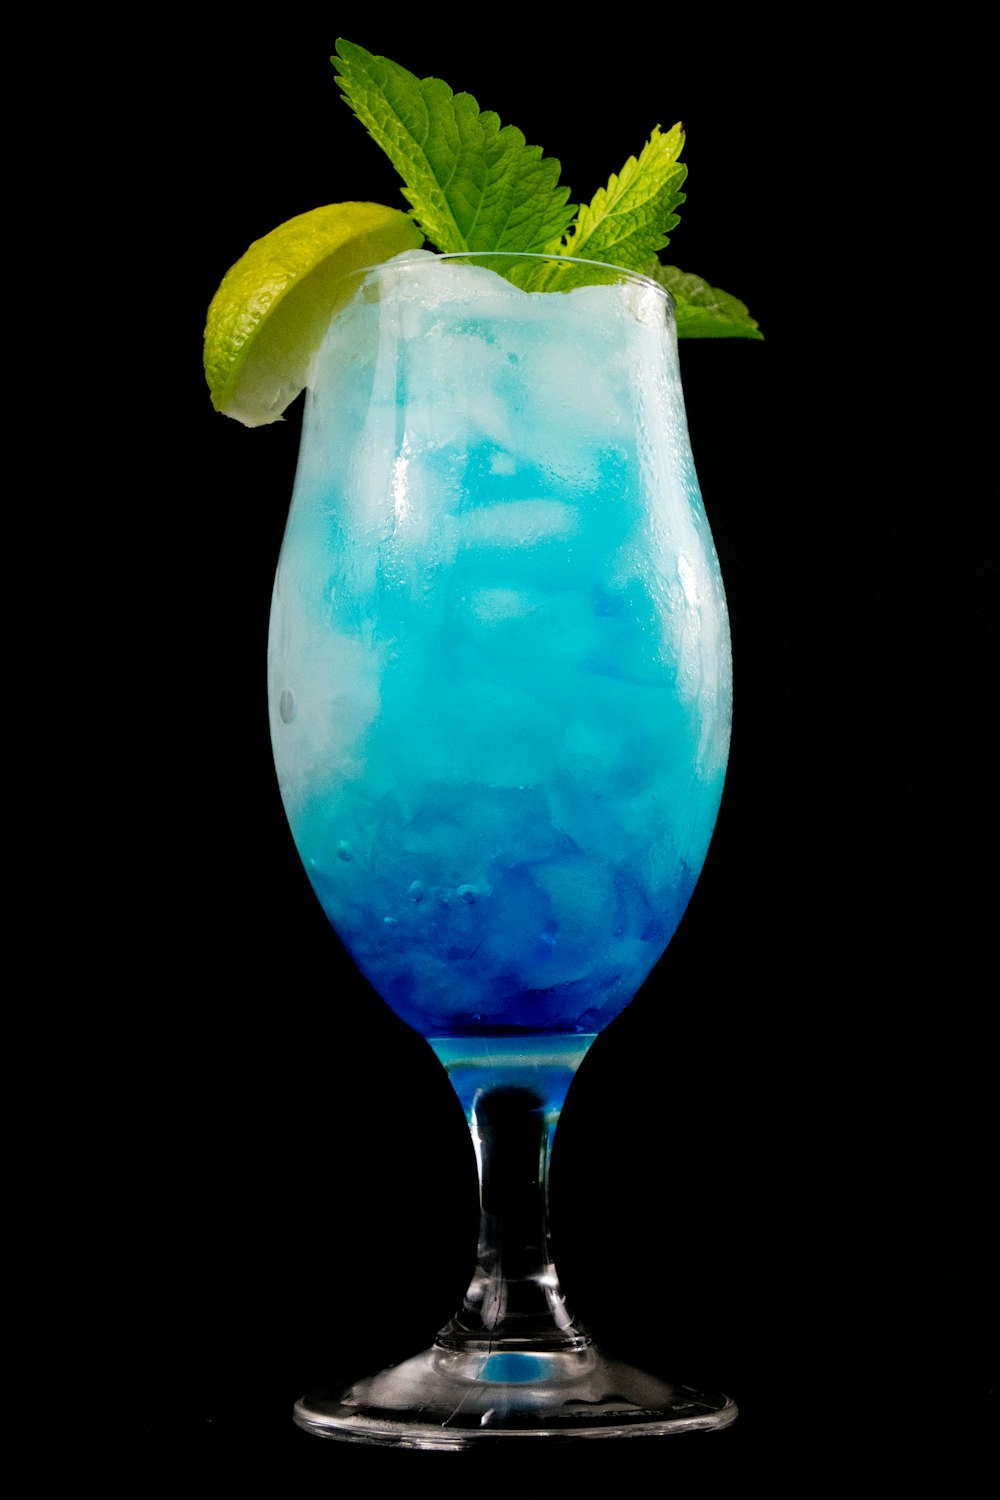 liquide bleu dans un verre à boire clair avec des tranches de citron